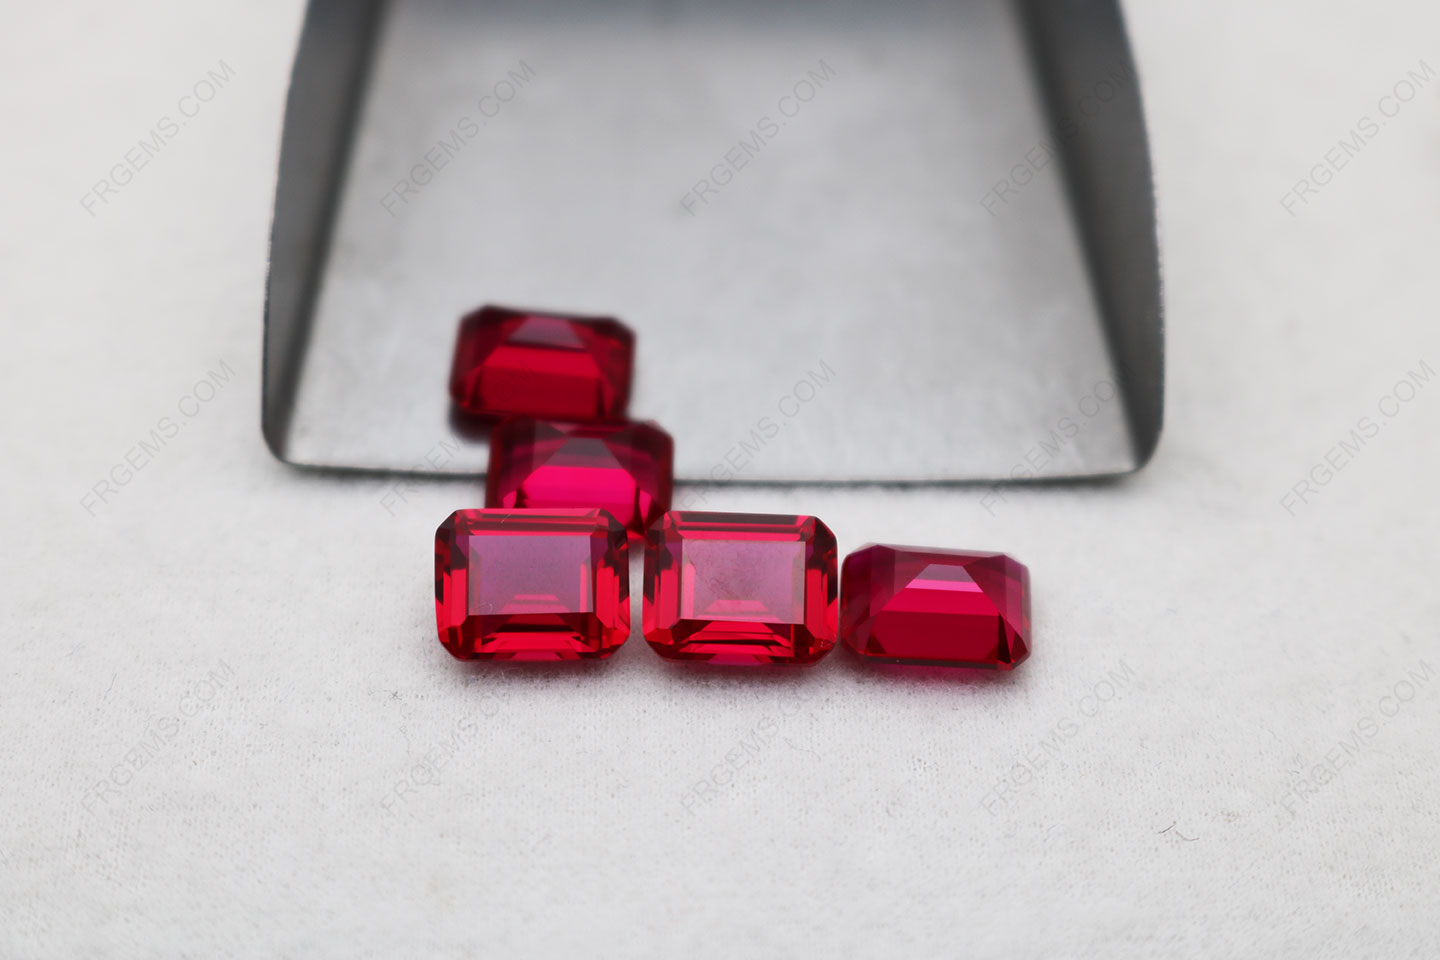 Emerald Cut Synthetic Ruby Red #5 Emerald Cut 10x8mm gemstones